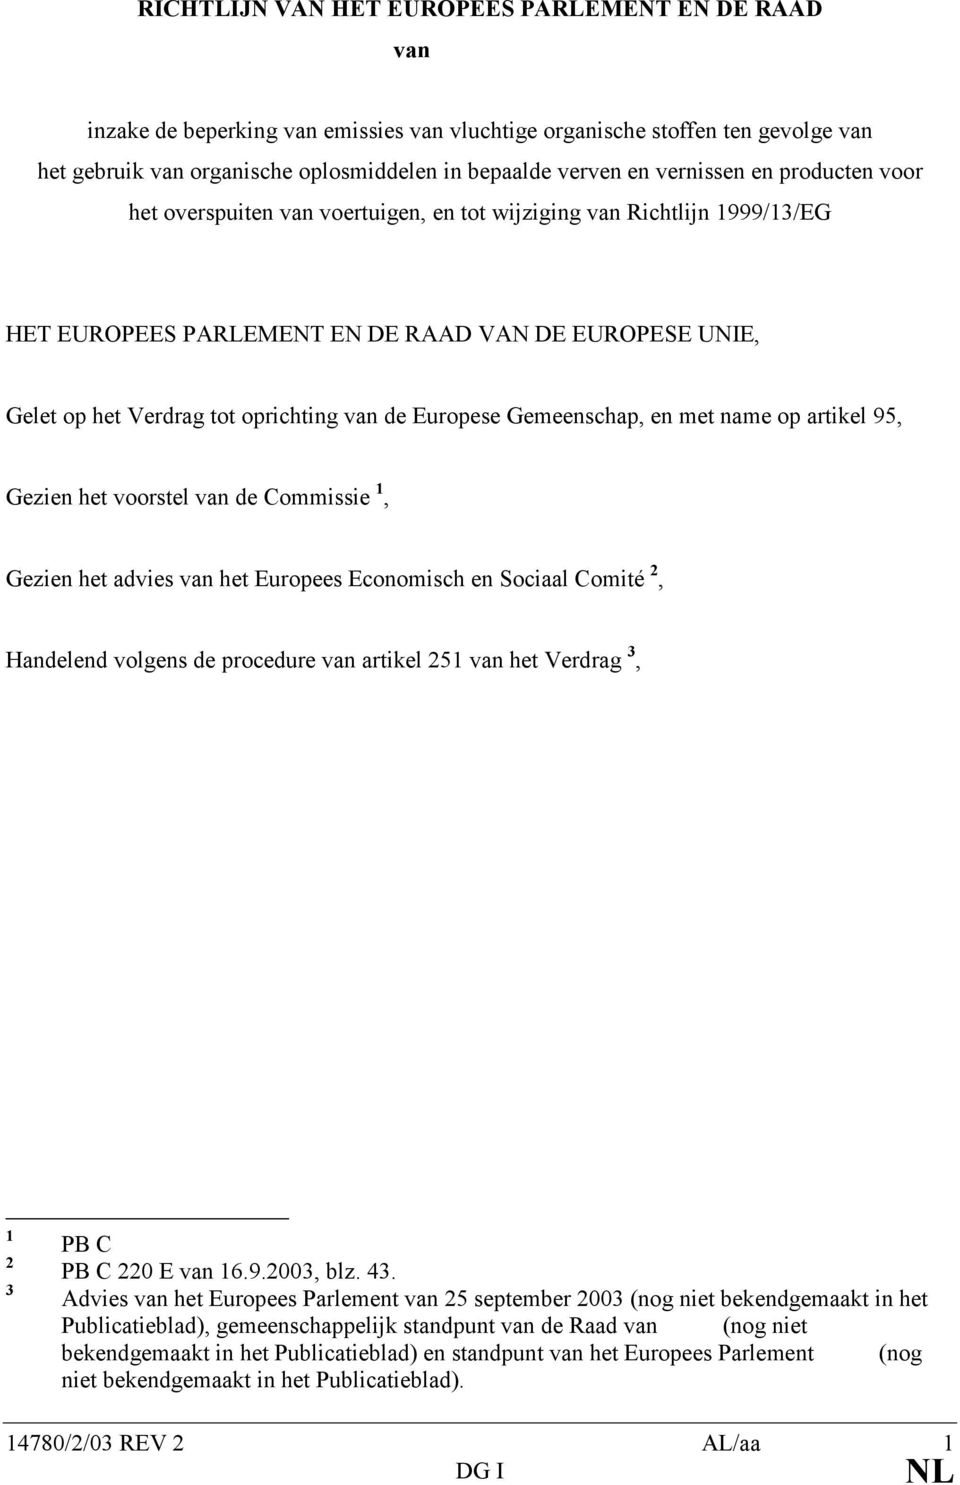 de Europese Gemeenschap, en met name op artikel 95, Gezien het voorstel van de Commissie 1, Gezien het advies van het Europees Economisch en Sociaal Comité 2, Handelend volgens de procedure van